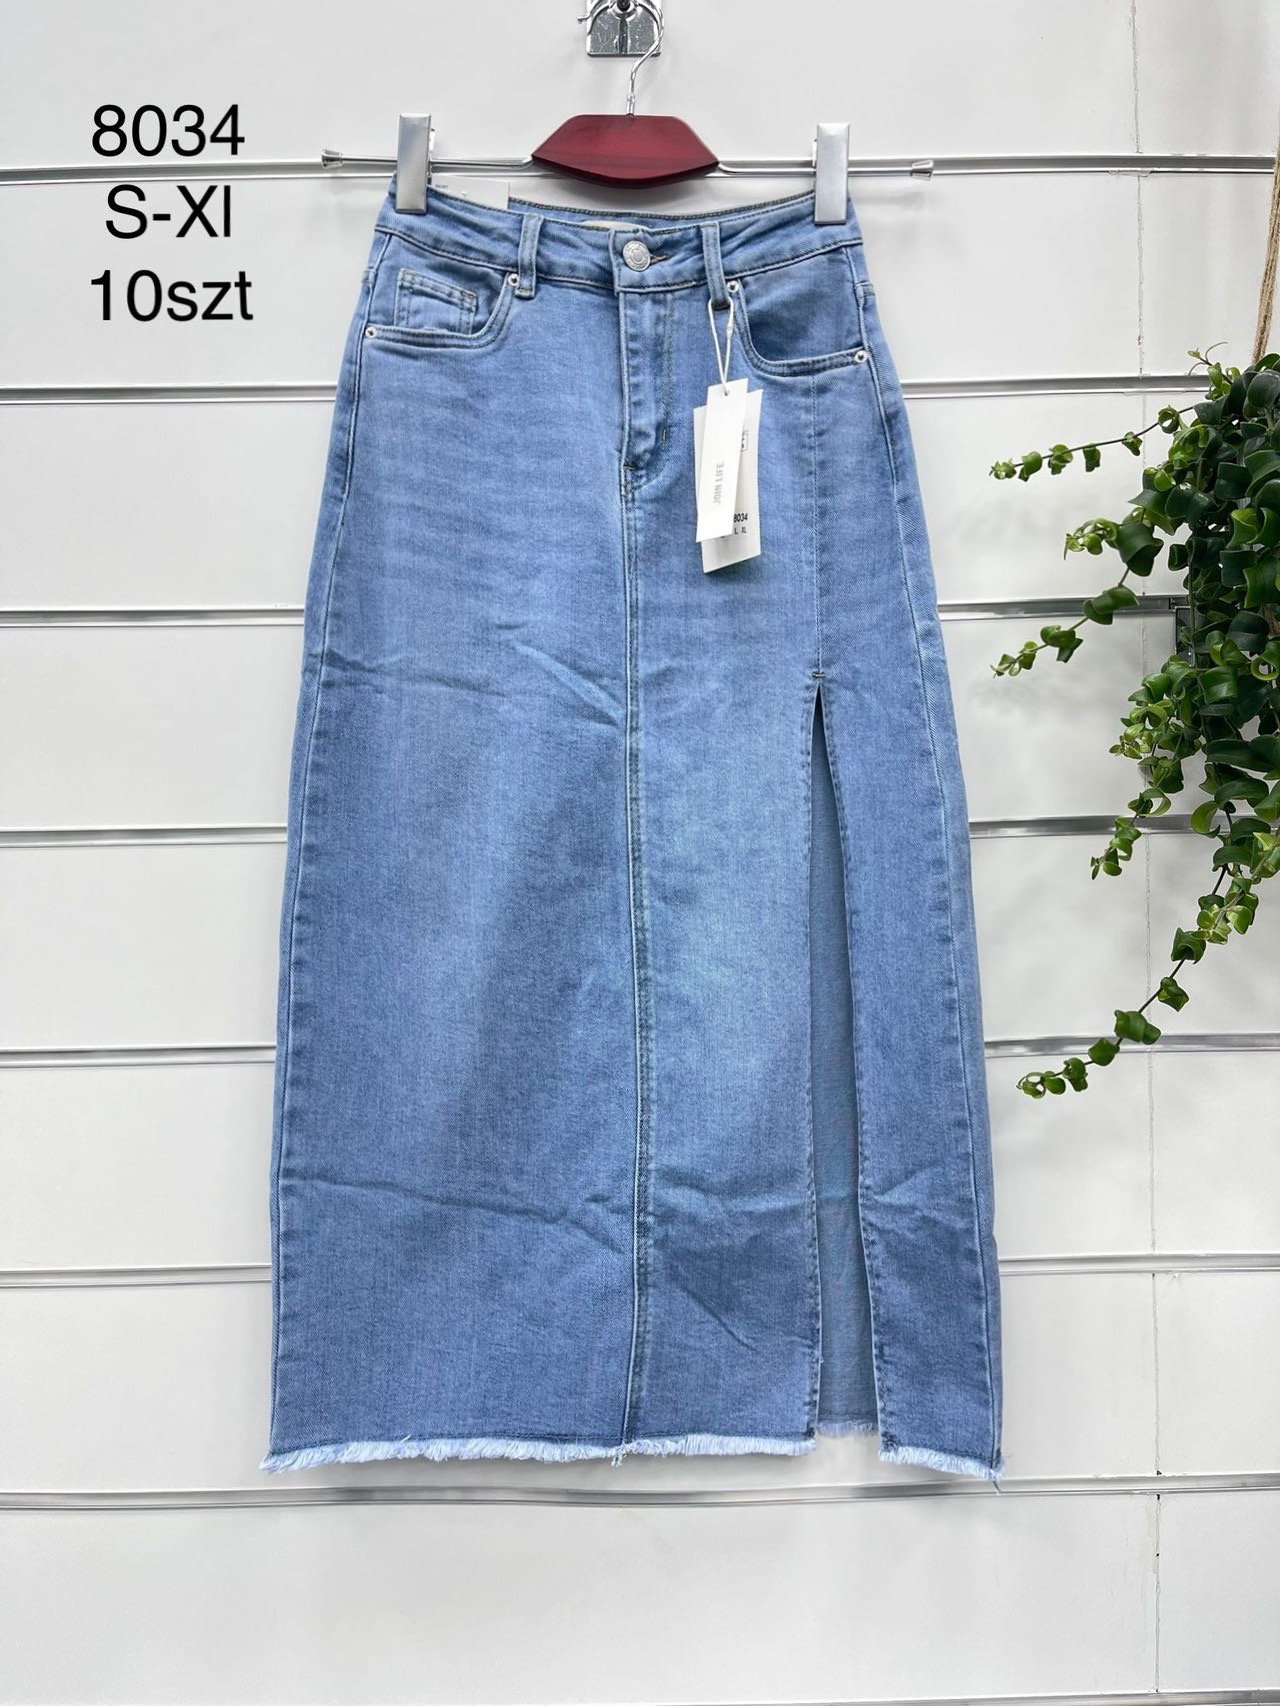 Spódnica  damskie jeans Roz XS-XL.  1 kolor . Paczka 10szt